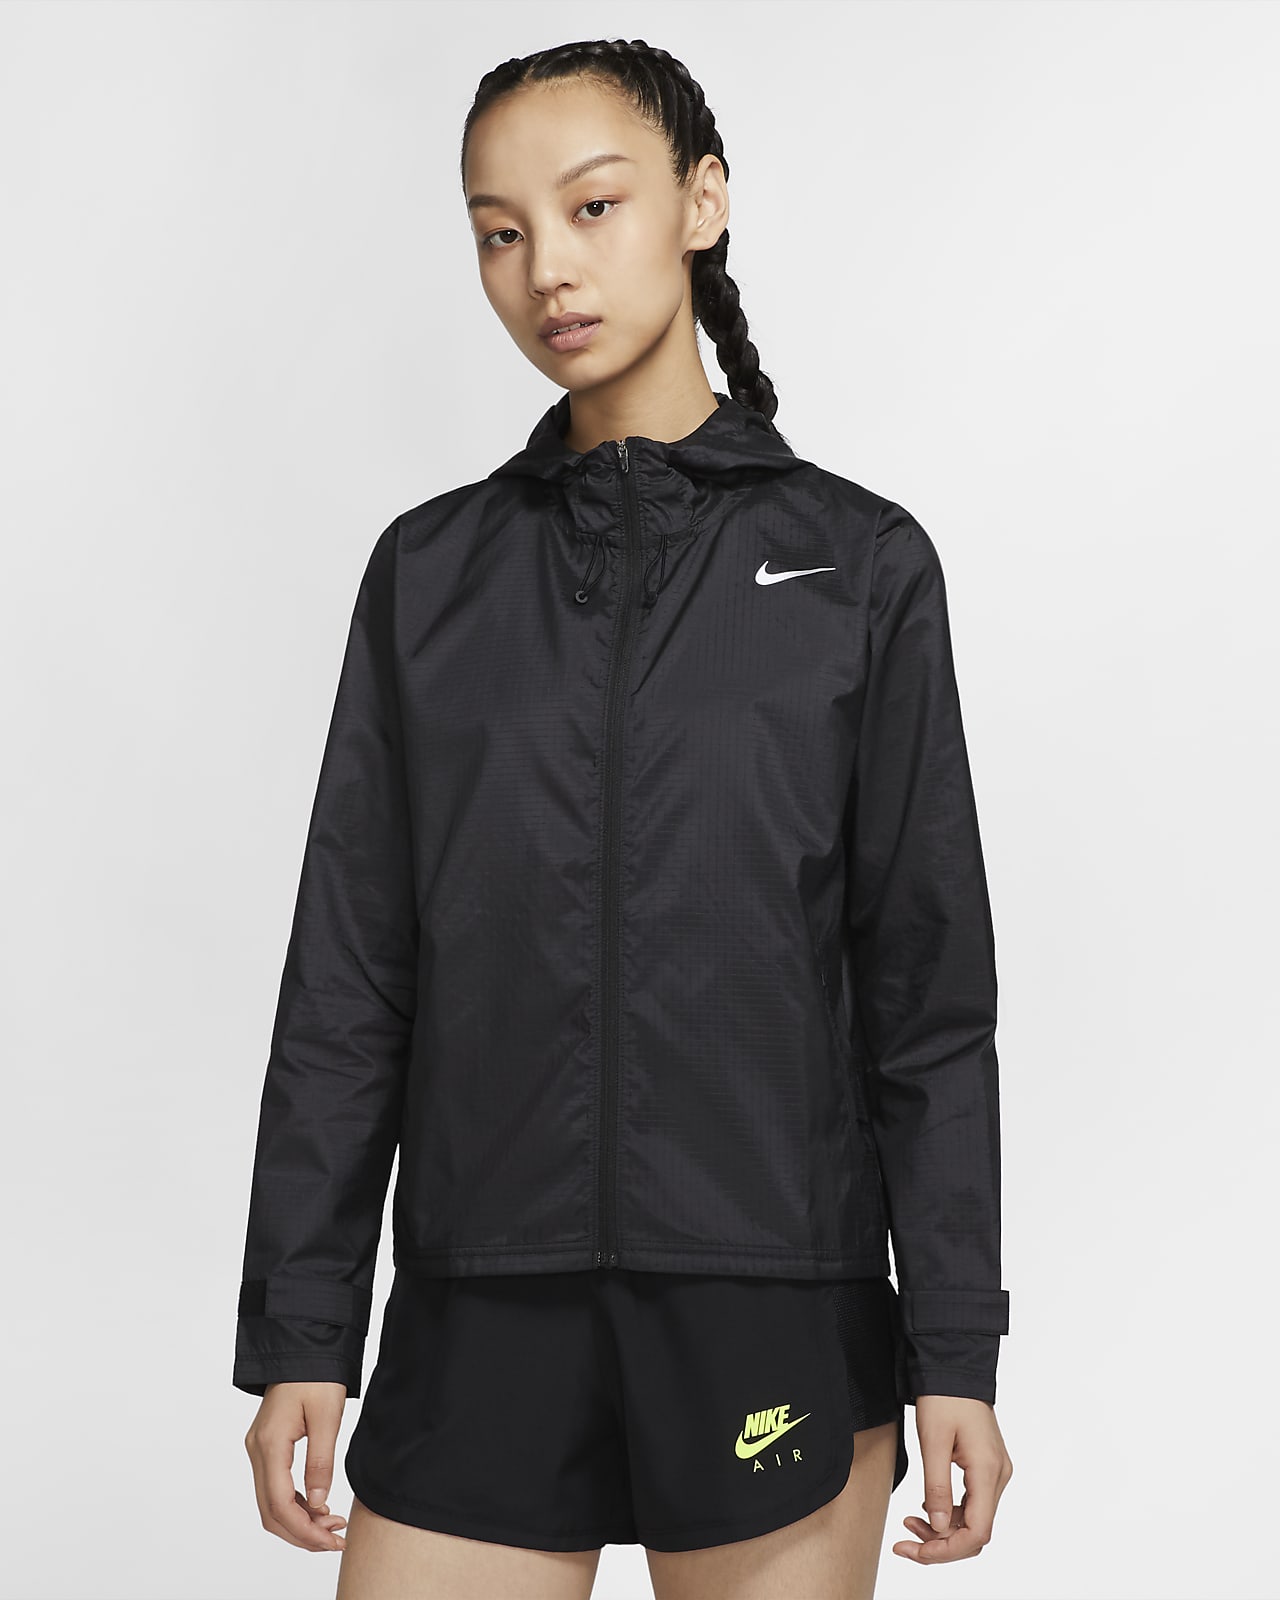 Running Jacket. Nike JP